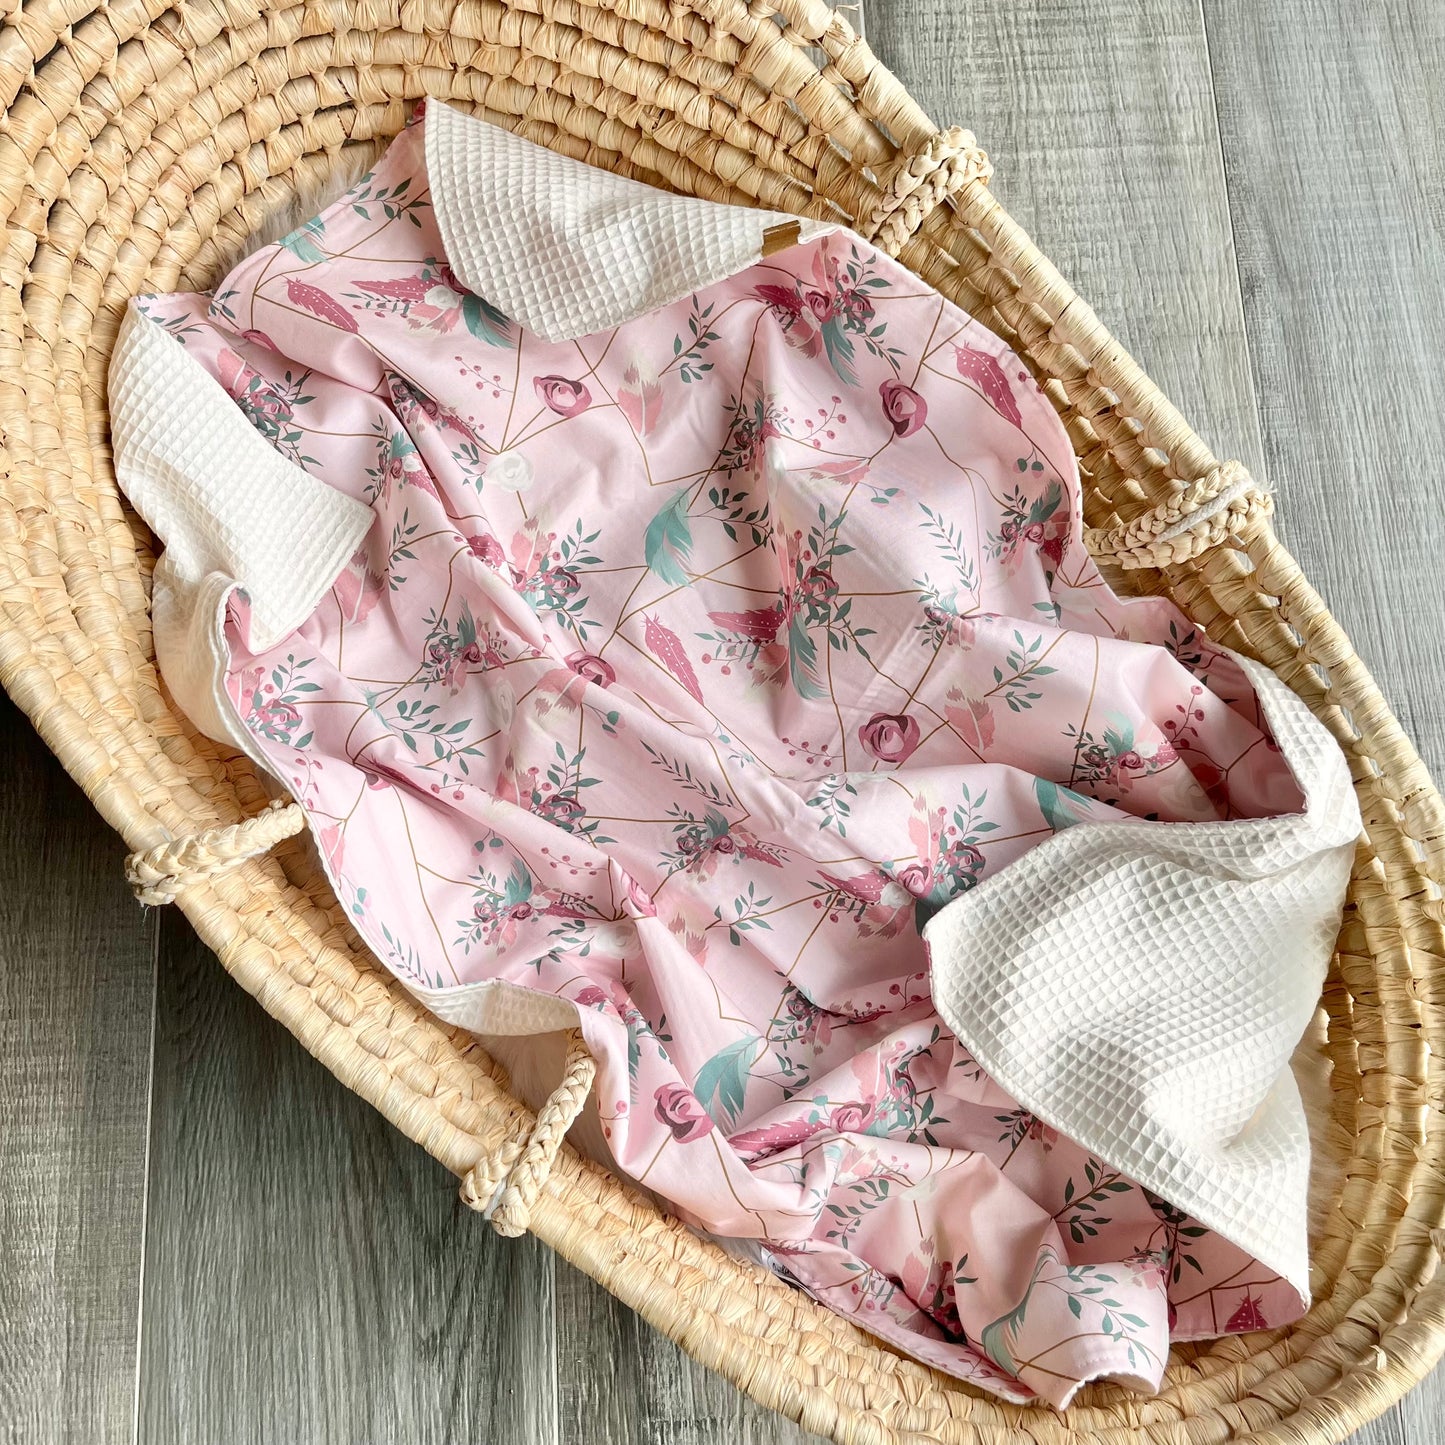 Baby Blanket “Flowers”